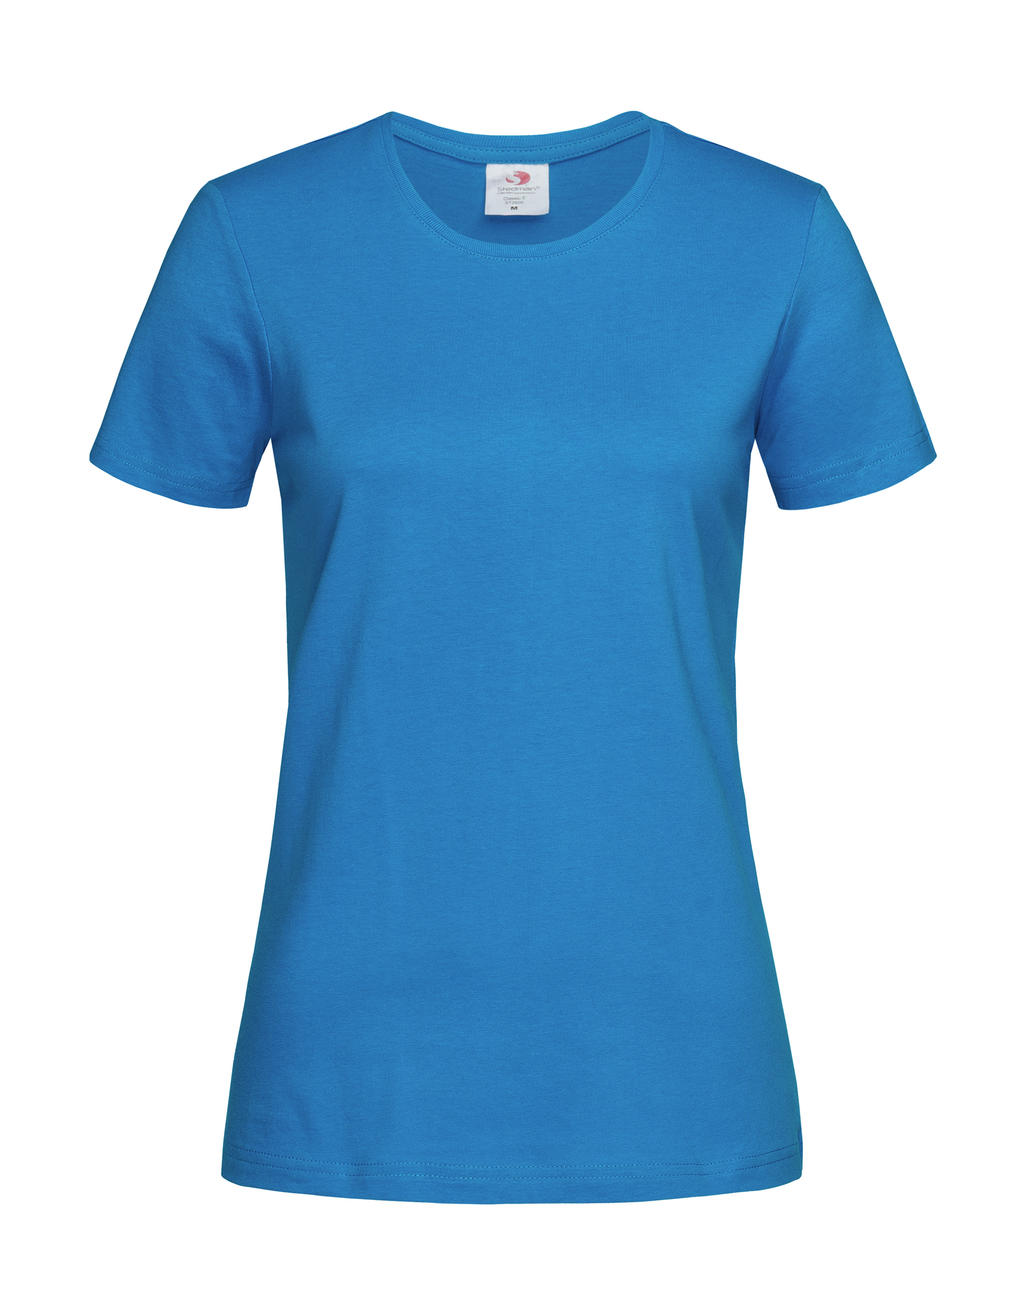 Tričko dámské Stedman Fitted s kulatým výstřihem - ocean blue, XL